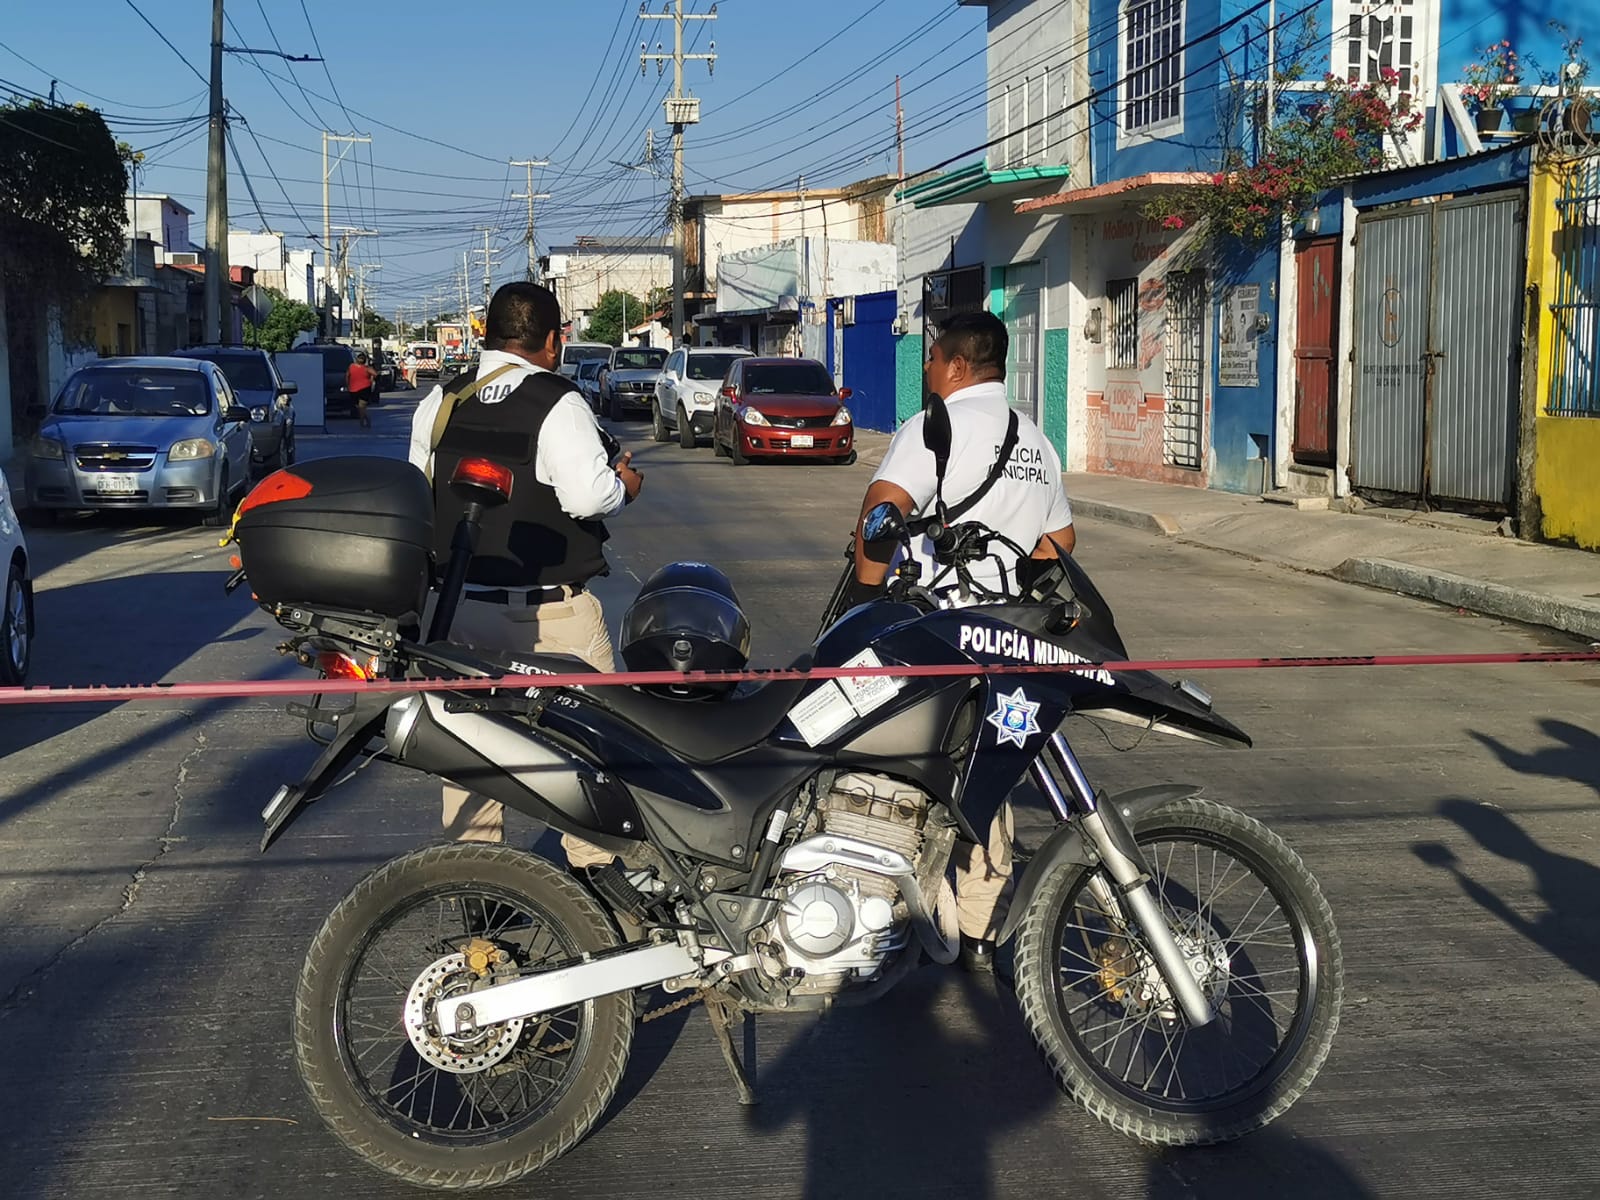 Atentados y homicidios sólo demuestran que Campeche es un estado inseguro